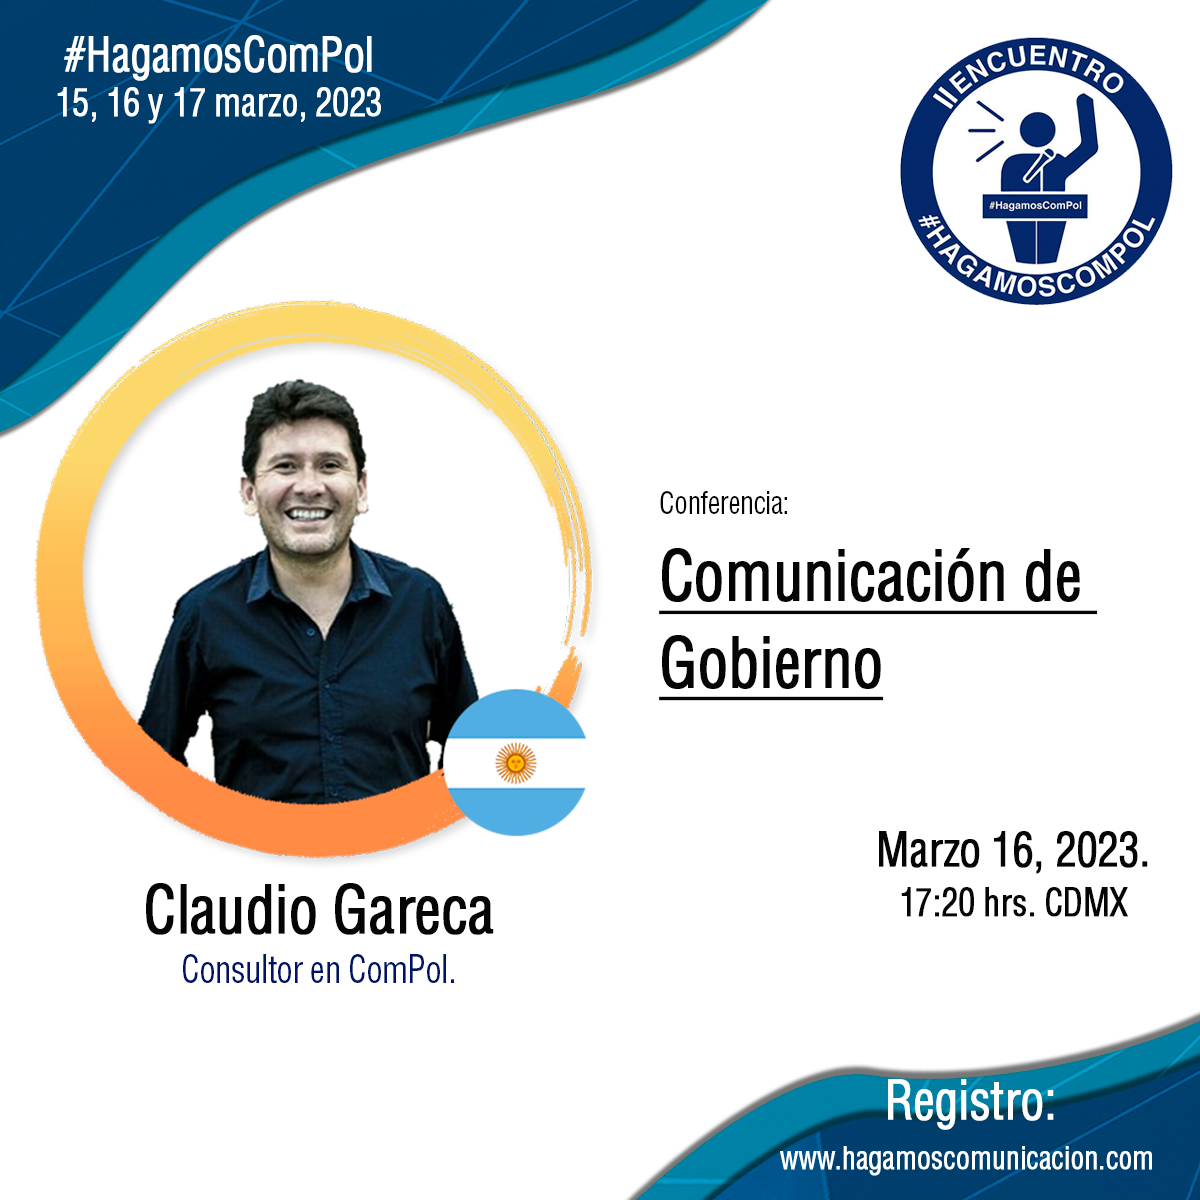 Claudio Gareca apertura el segundo día del II Encuentro #HagamosComPol